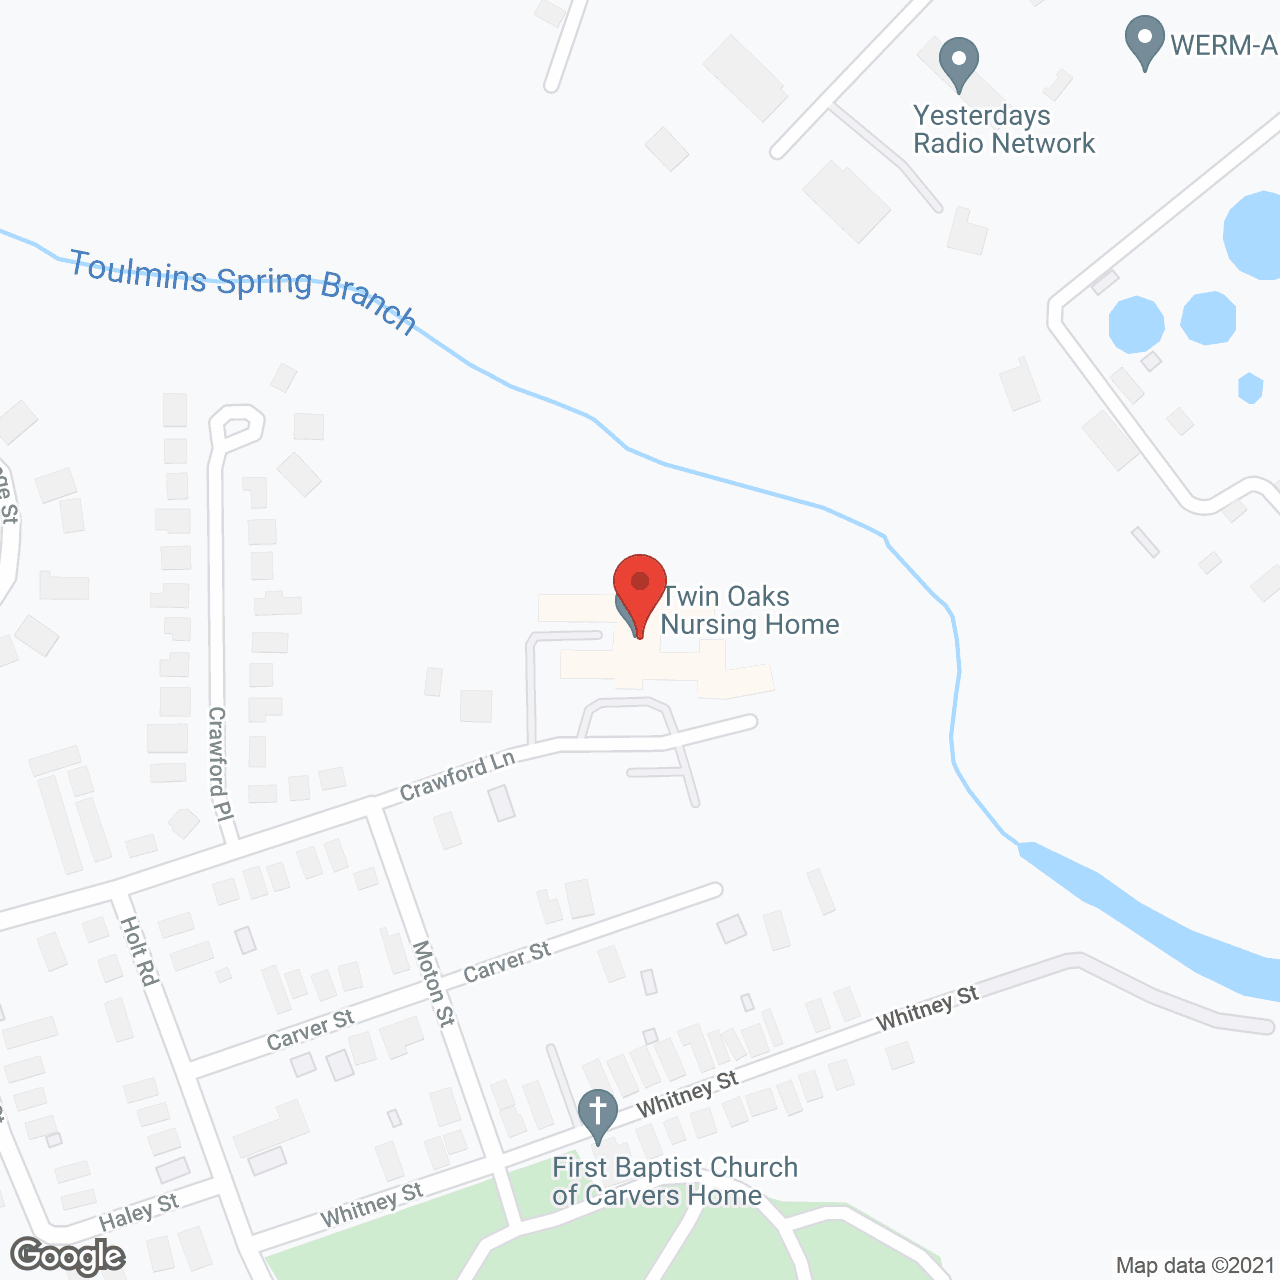 Twin Oaks Nursing Home in google map